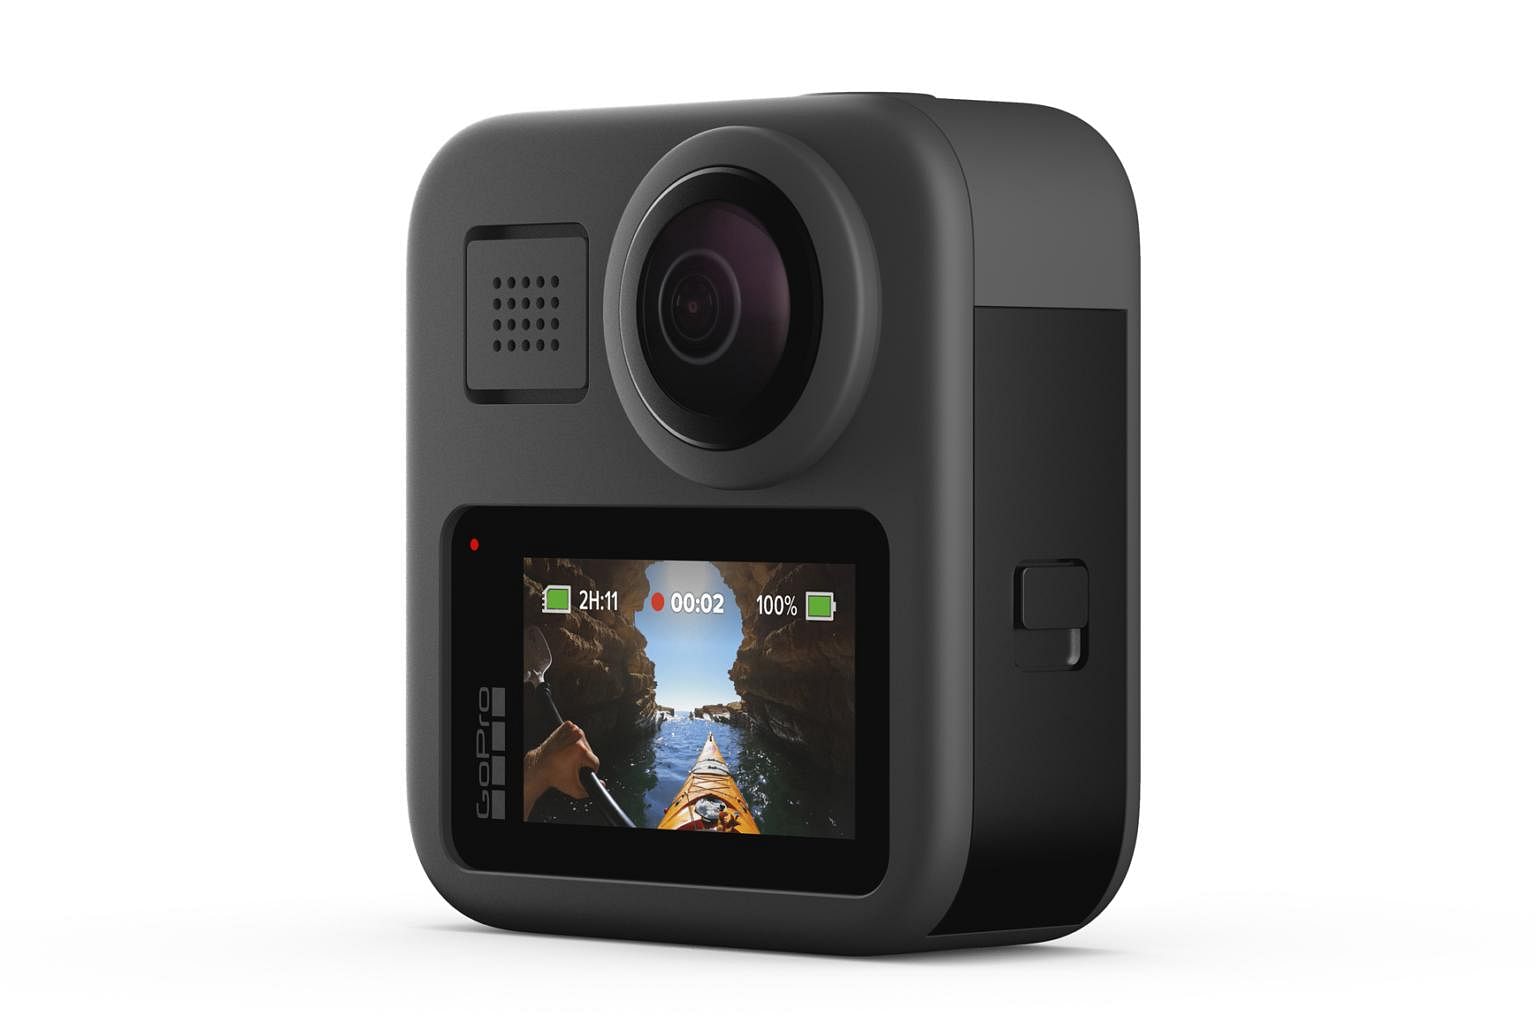 kamera gopro 360